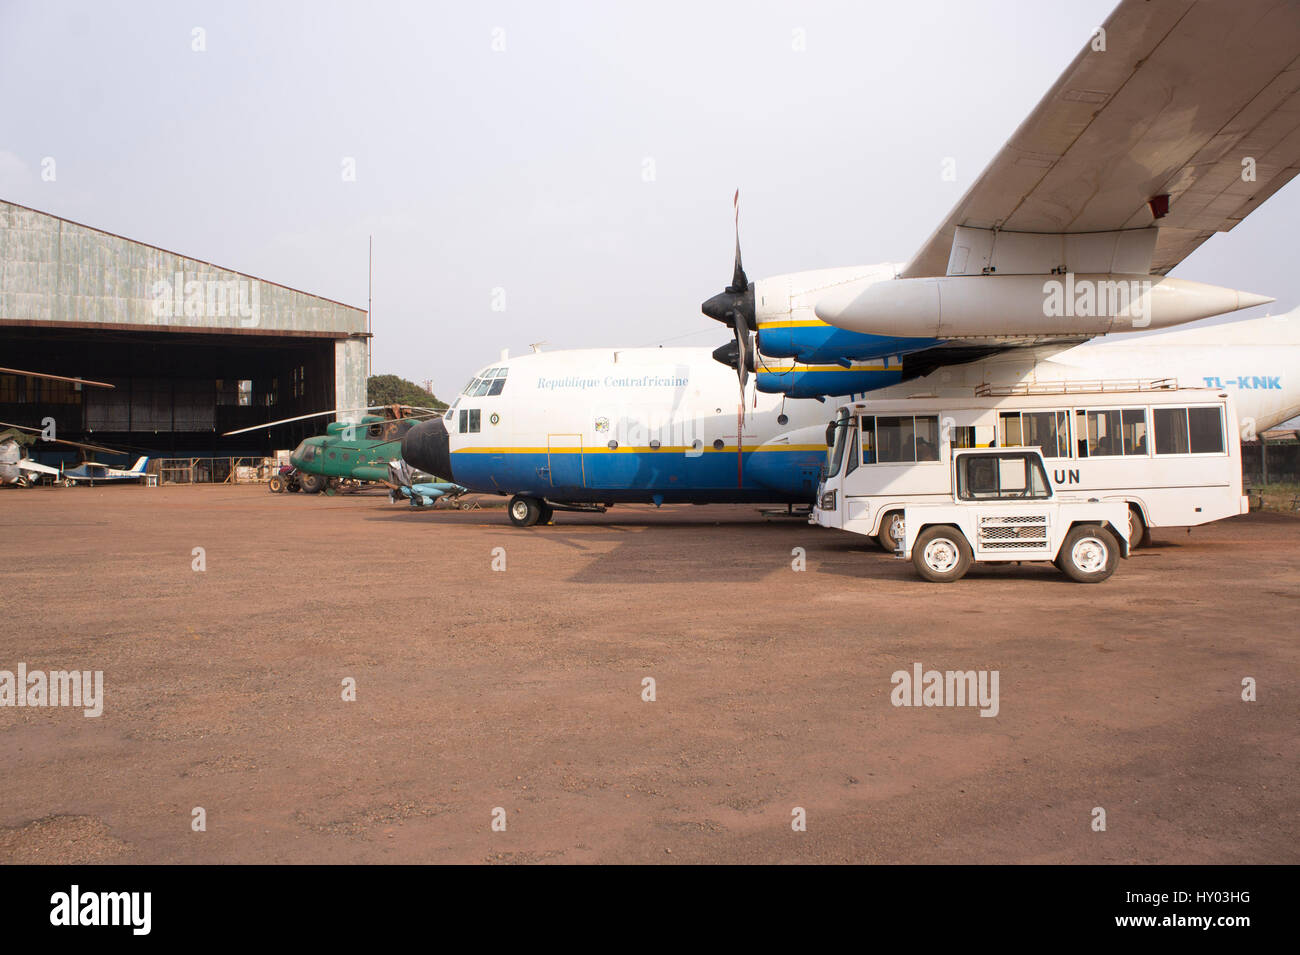 Lockheed C130A Hercules, queue nombre TL-KNK, appartenant à la République centrafricaine, l'Armée de l'air stationnée sur un stand à l'aéroport de Bangui. Banque D'Images